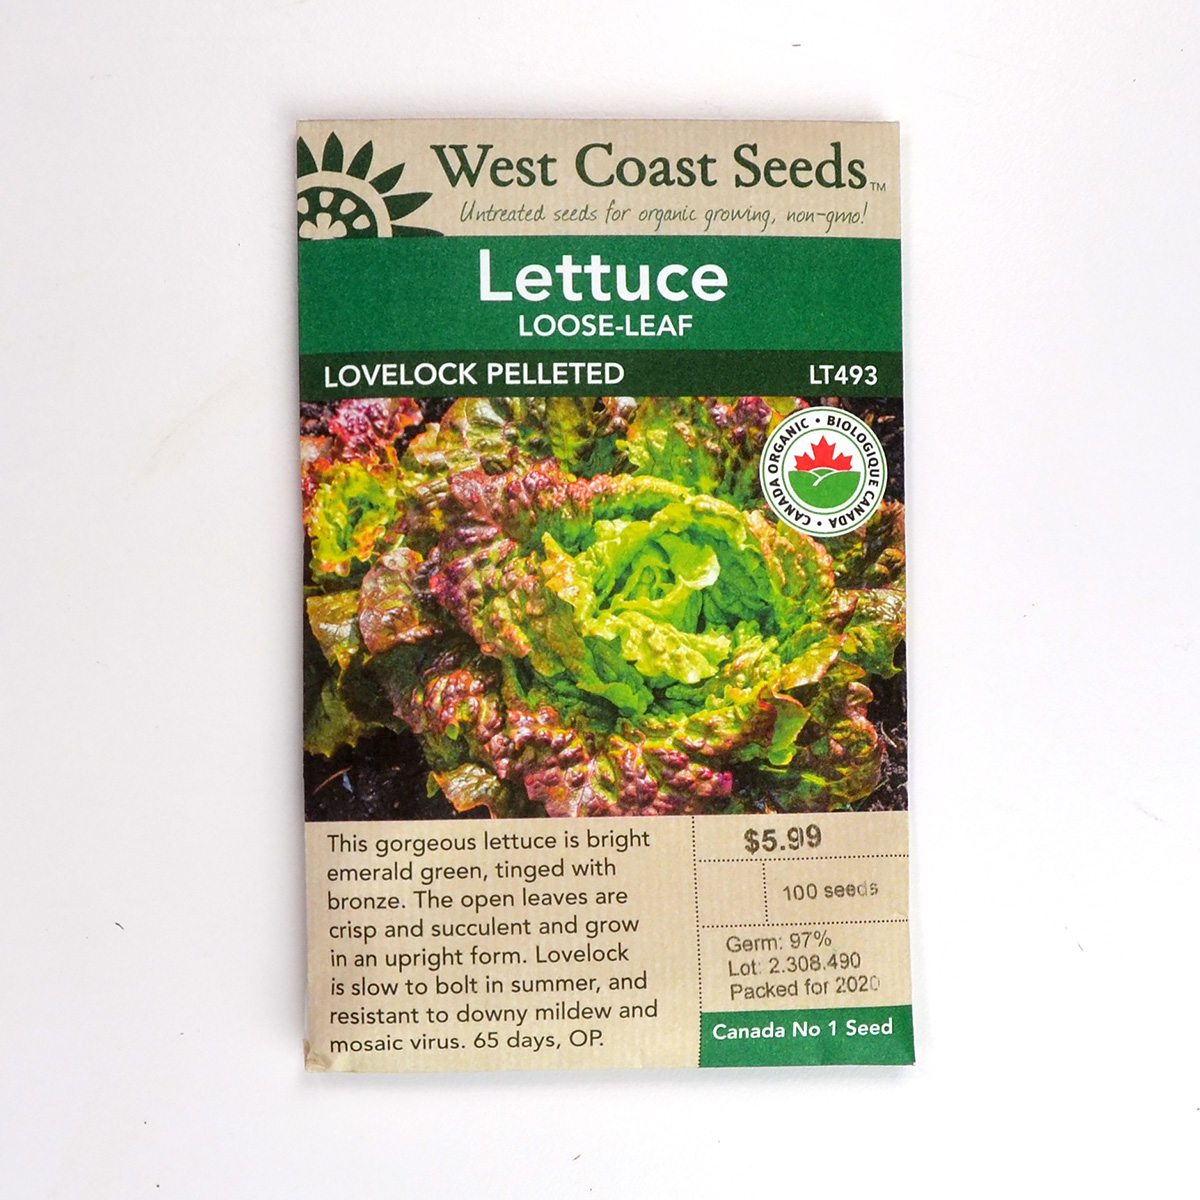 Lettuce Loose-Leaf Lovelock Pelleted Seeds LT493 